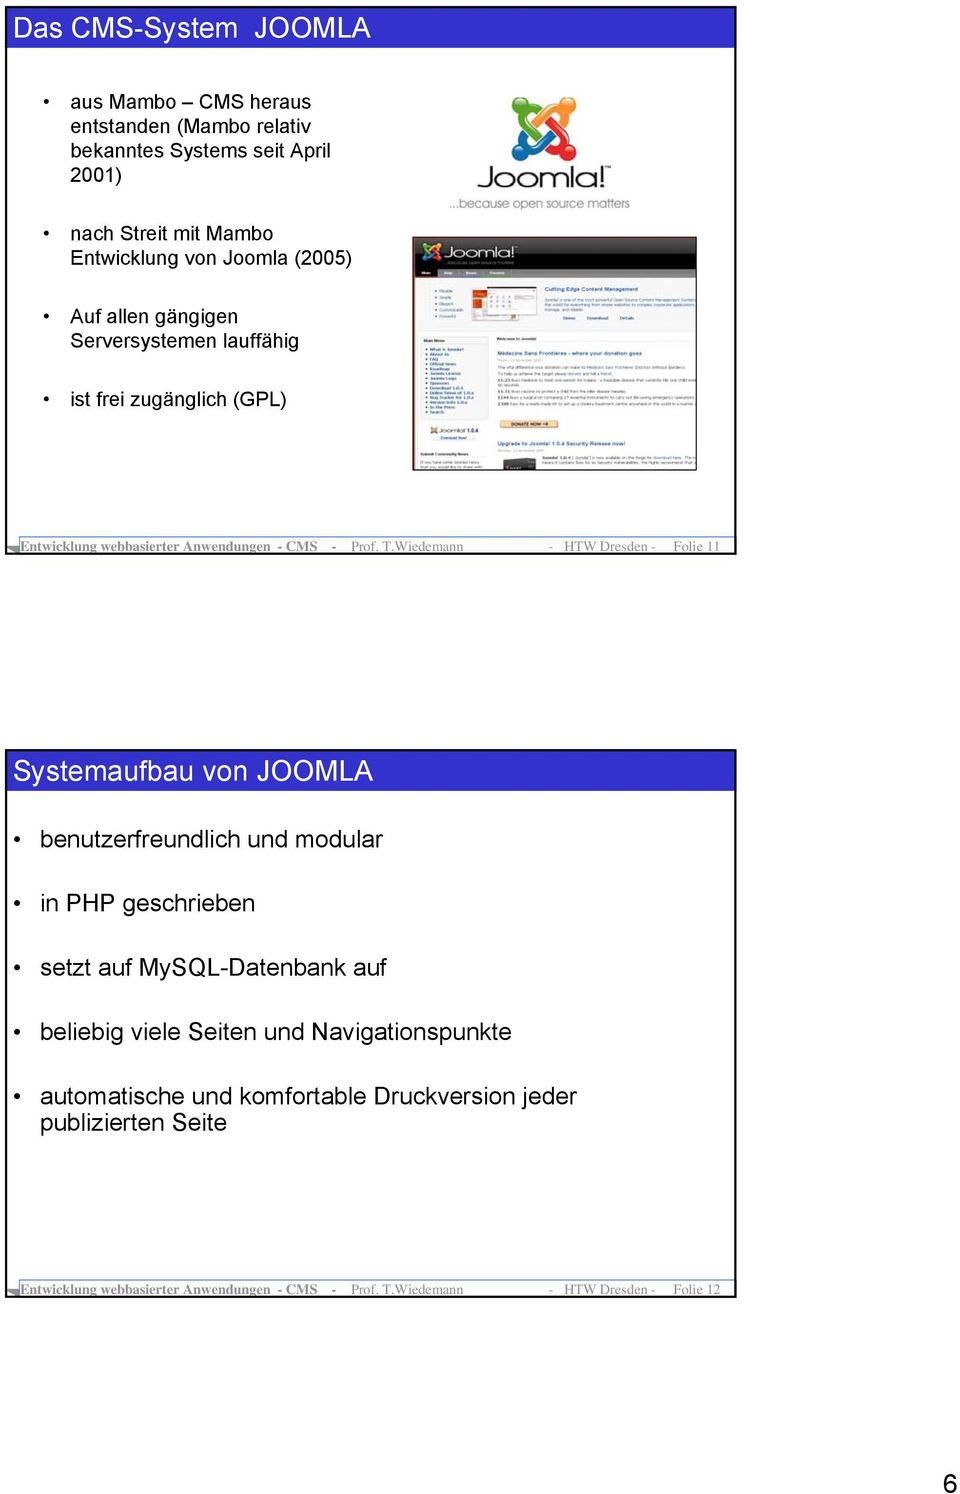 Wiedemann - HTW Dresden - Folie 11 Systemaufbau von JOOMLA benutzerfreundlich und modular in PHP geschrieben setzt auf MySQL-Datenbank auf beliebig viele